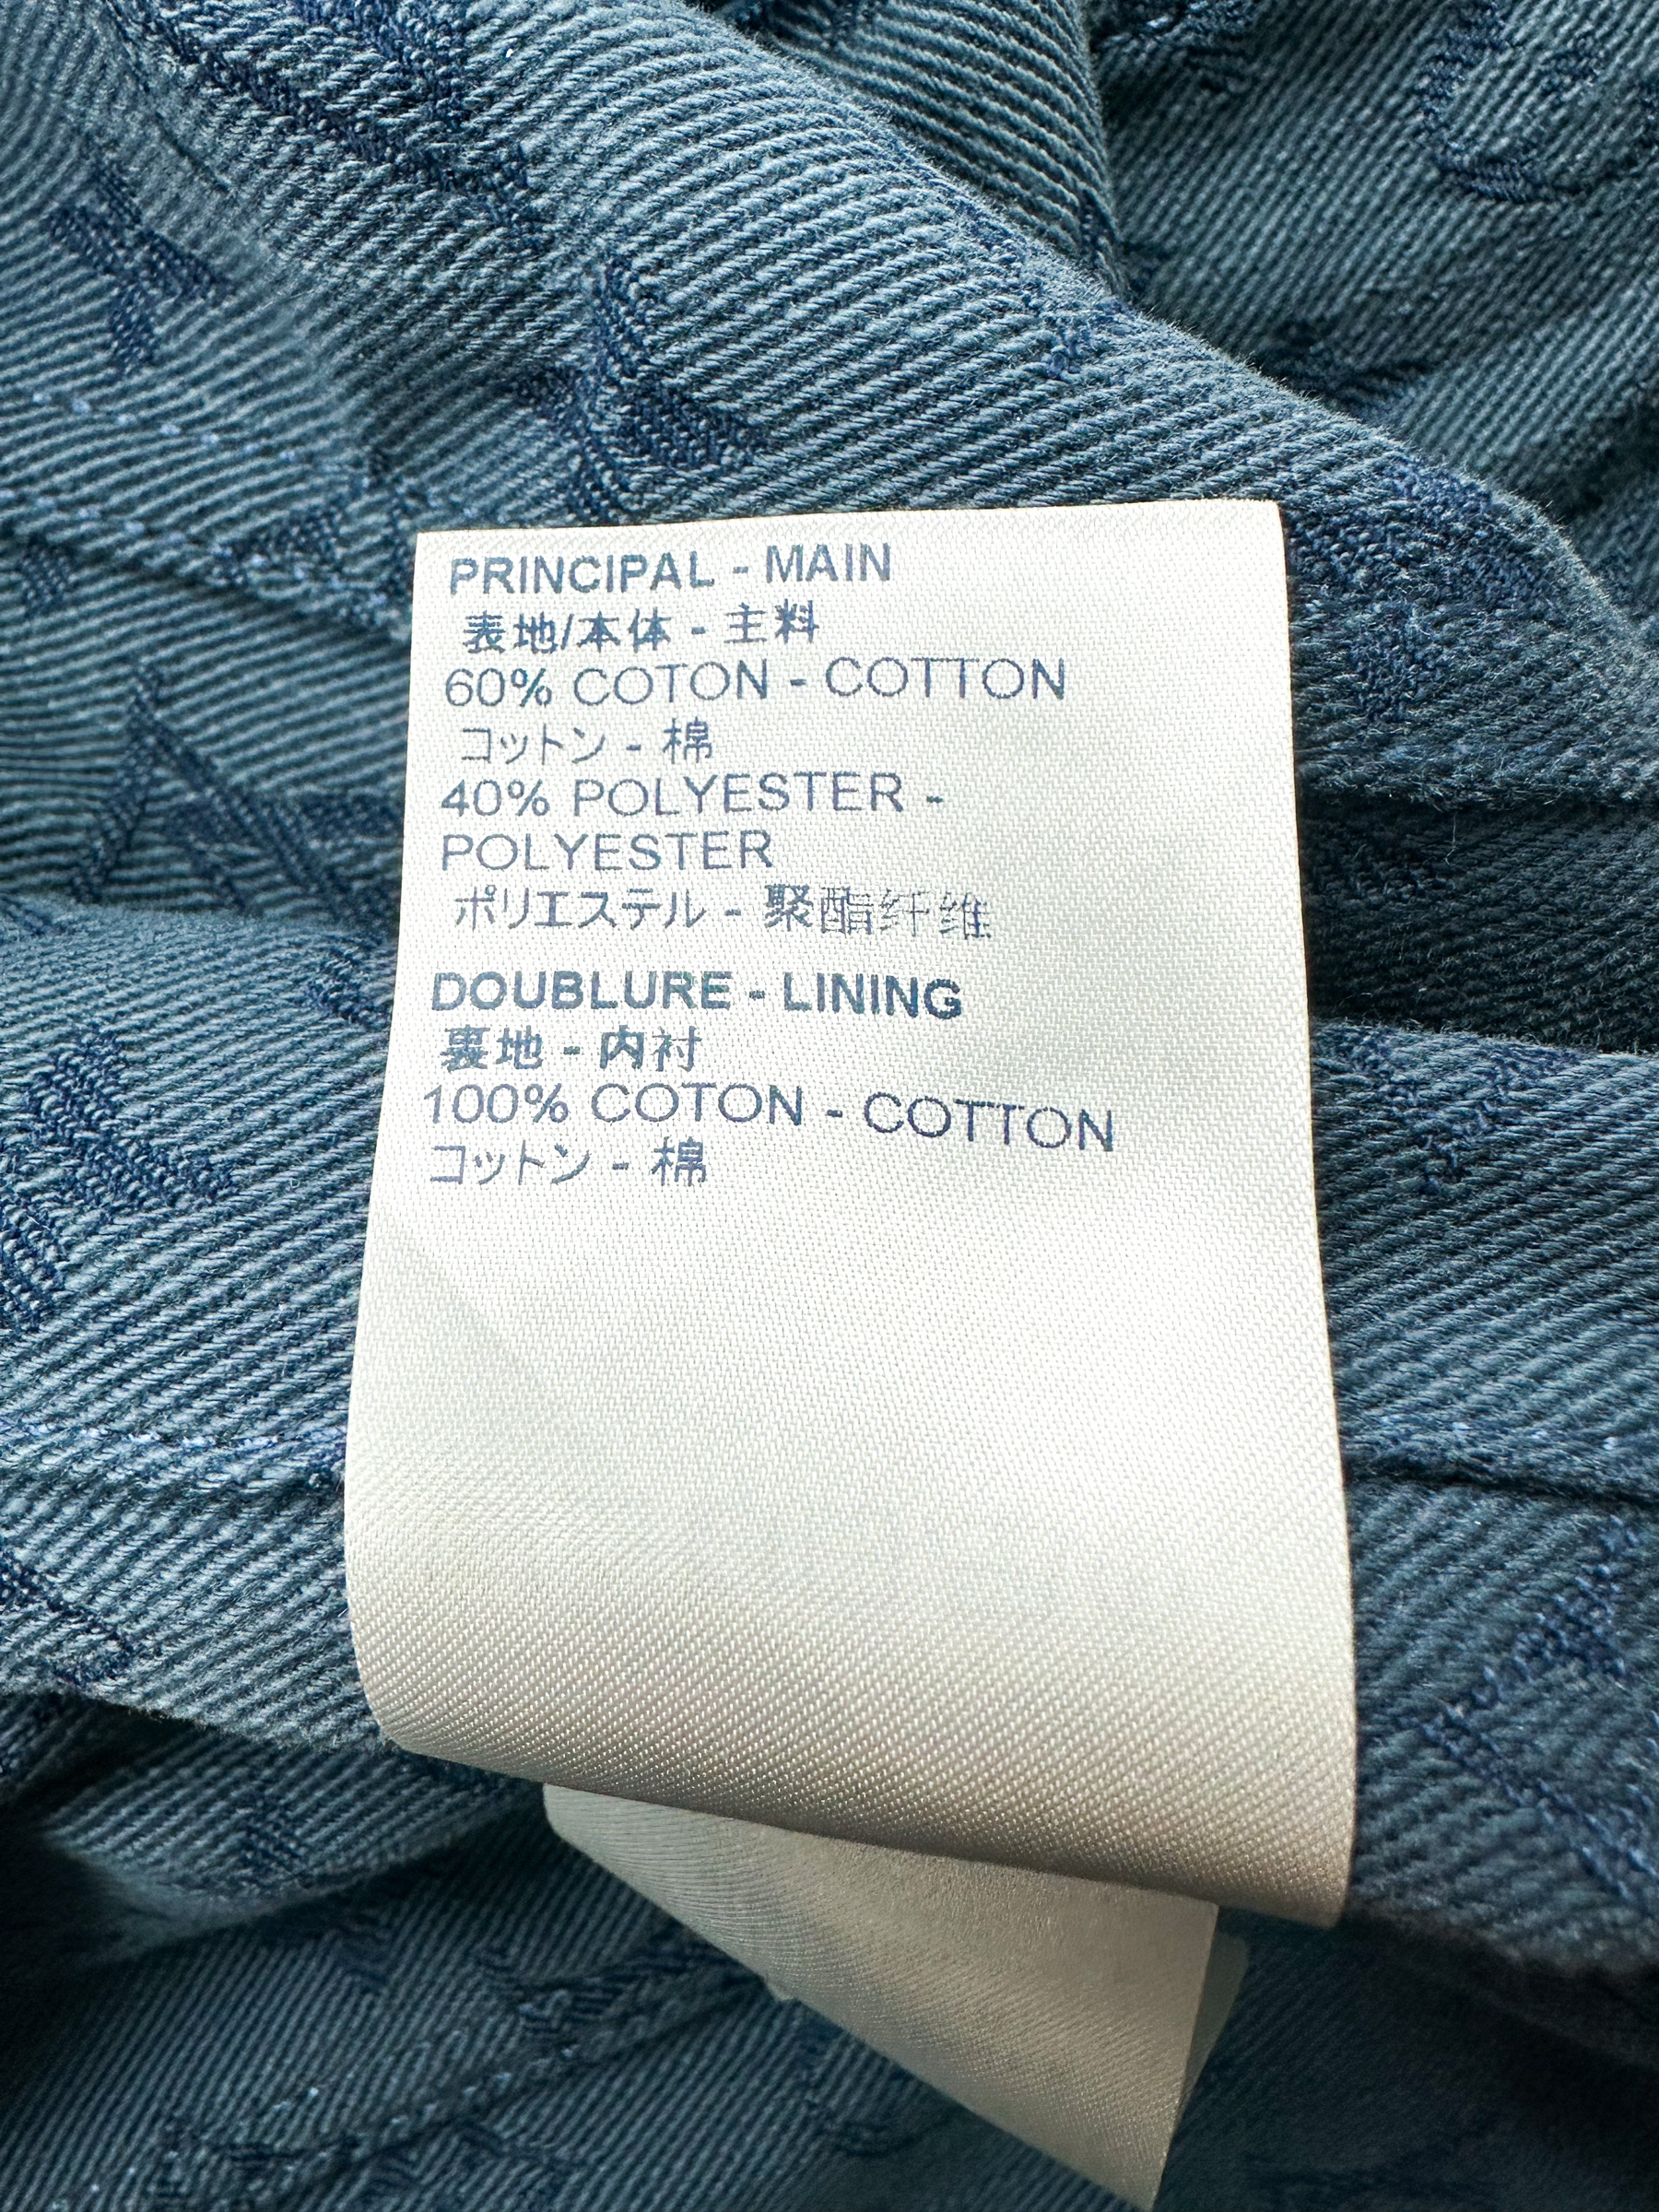 Louis Vuitton Blue Logo Monogram Denim Button Front Jacket L Louis